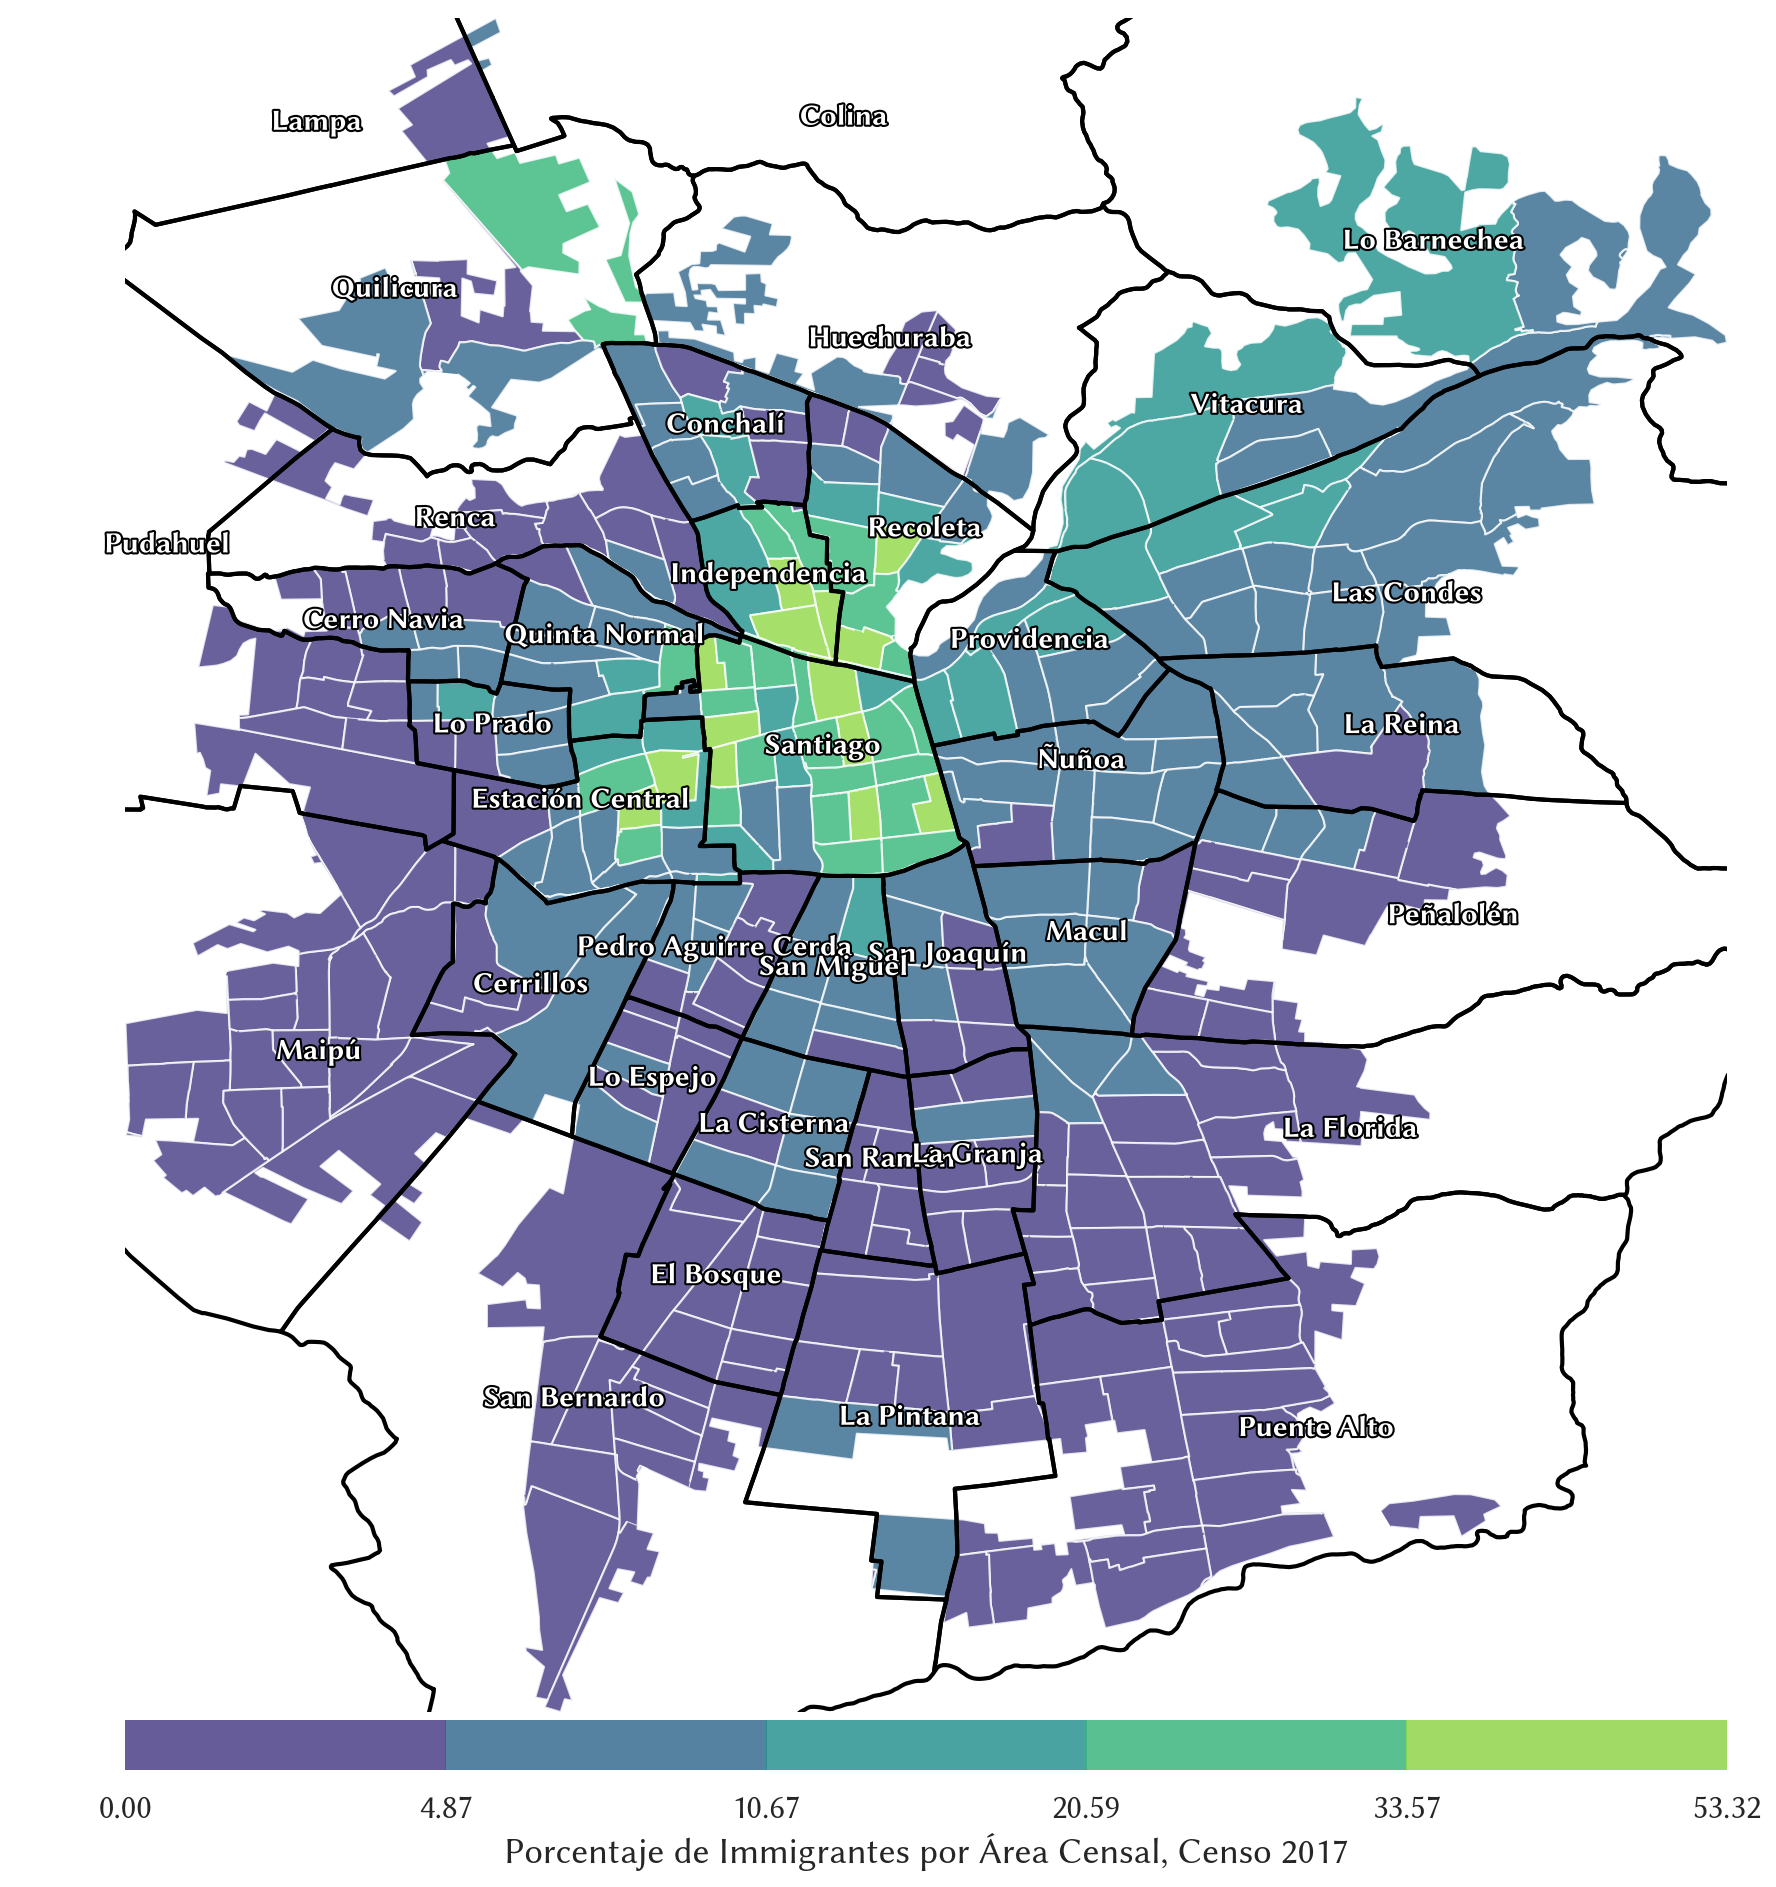 Mapa de coropletas representando la cantidad de inmigrantes por área censal en Santiago.